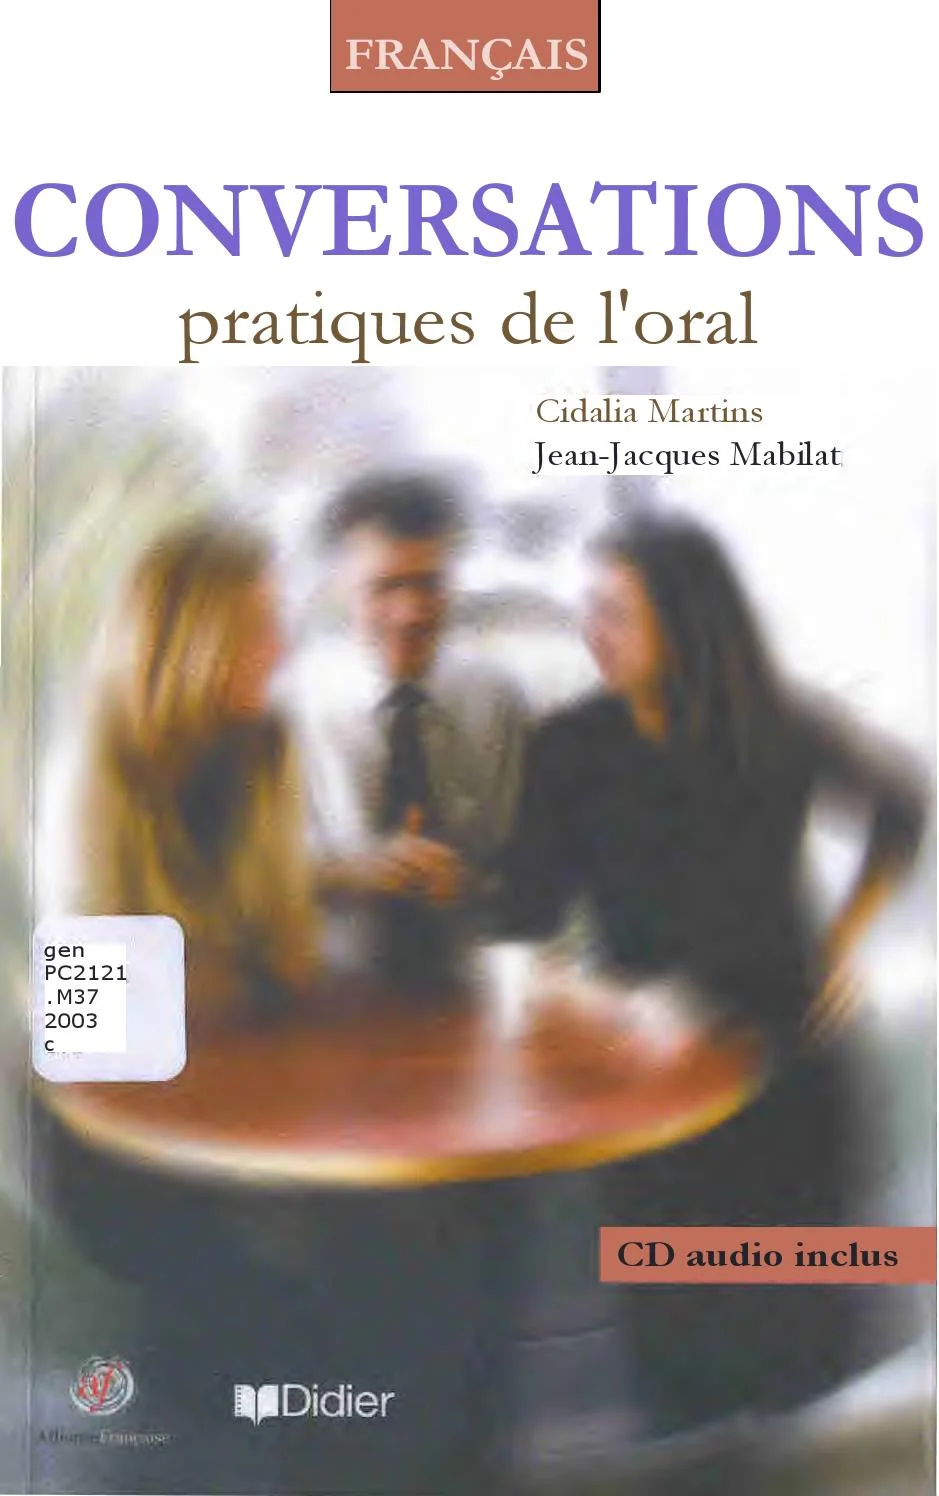 法语原版教材《口语实用对话》Conversations pratiques de l’oral